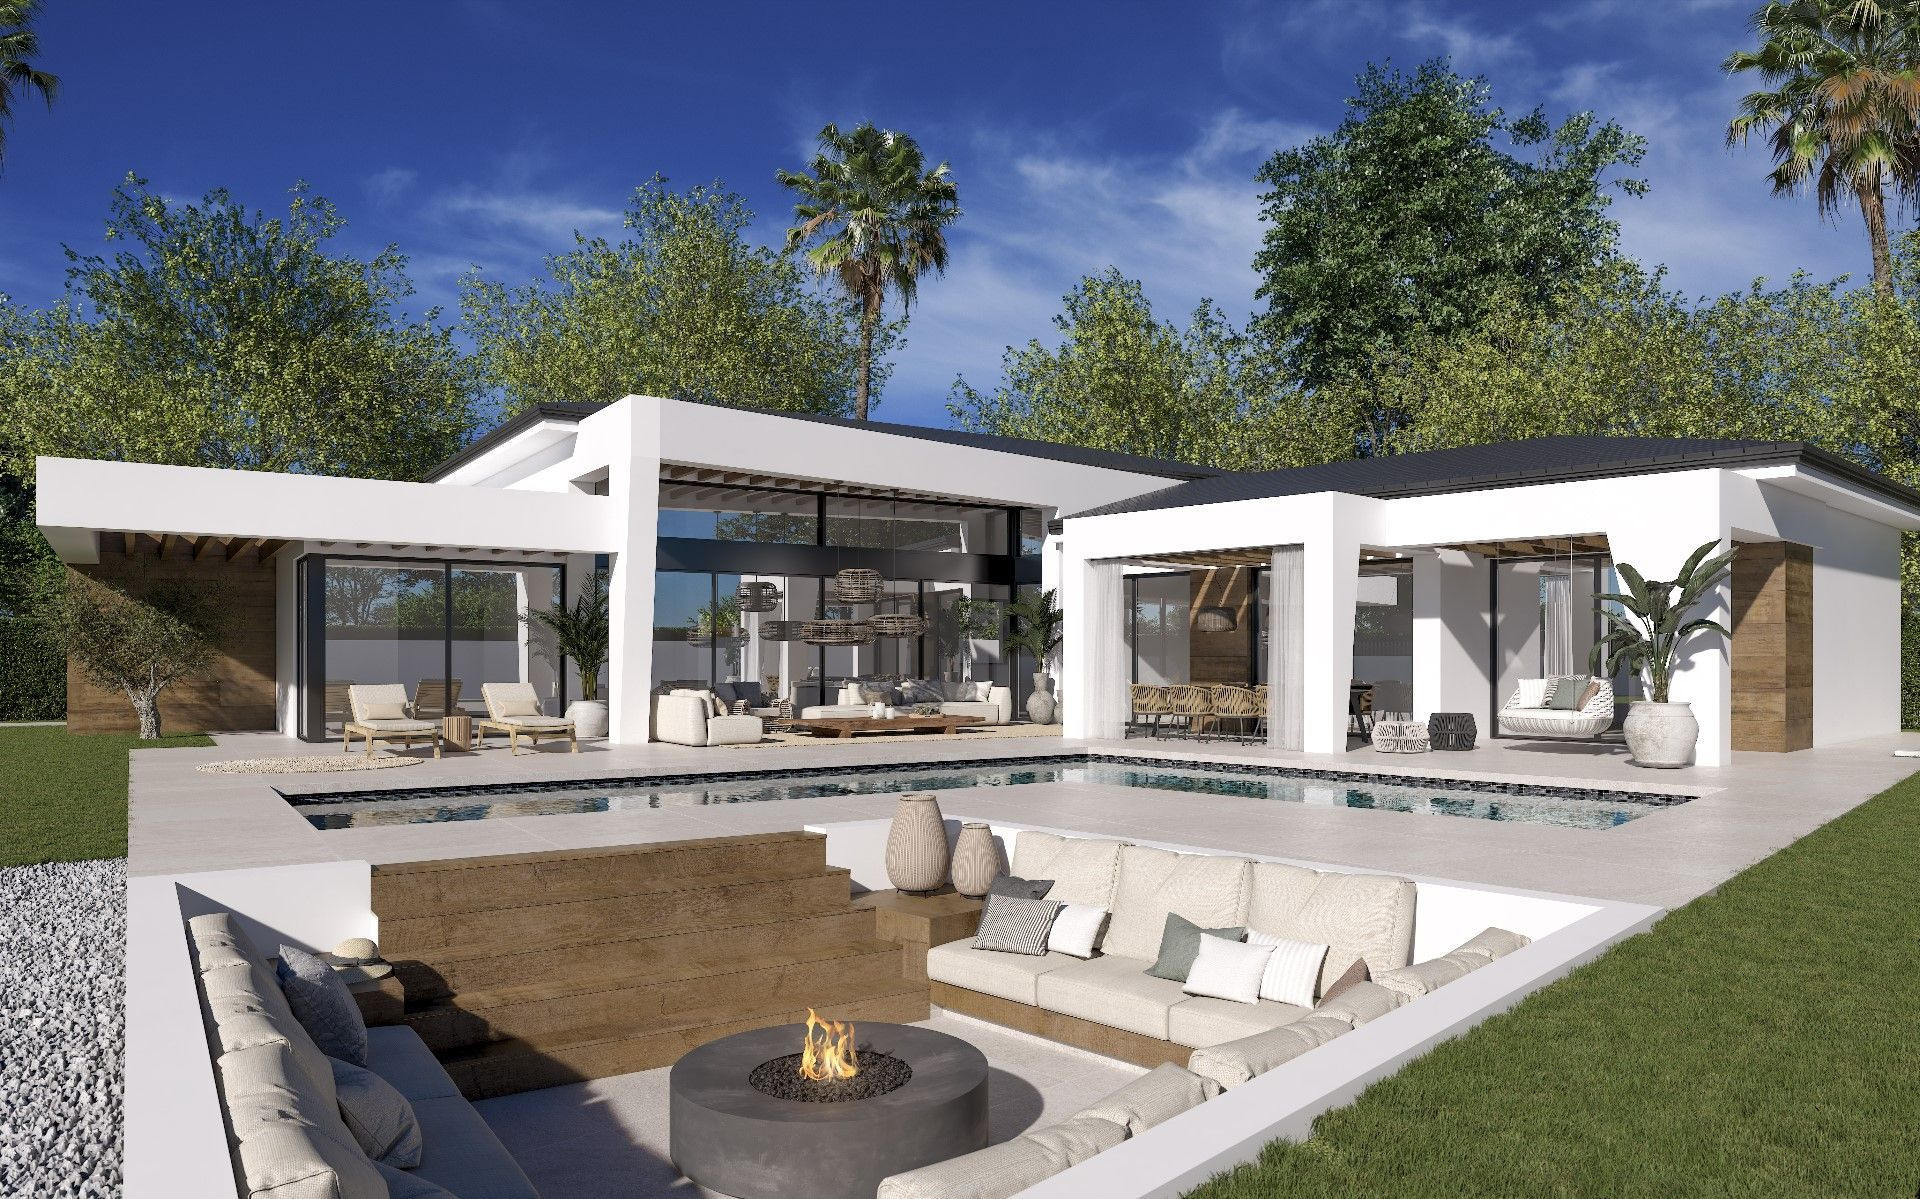 Proyecto exclusivo de 3 villas de lujo de estilo contemporáneo en una sola planta en pleno Valle del Golf.